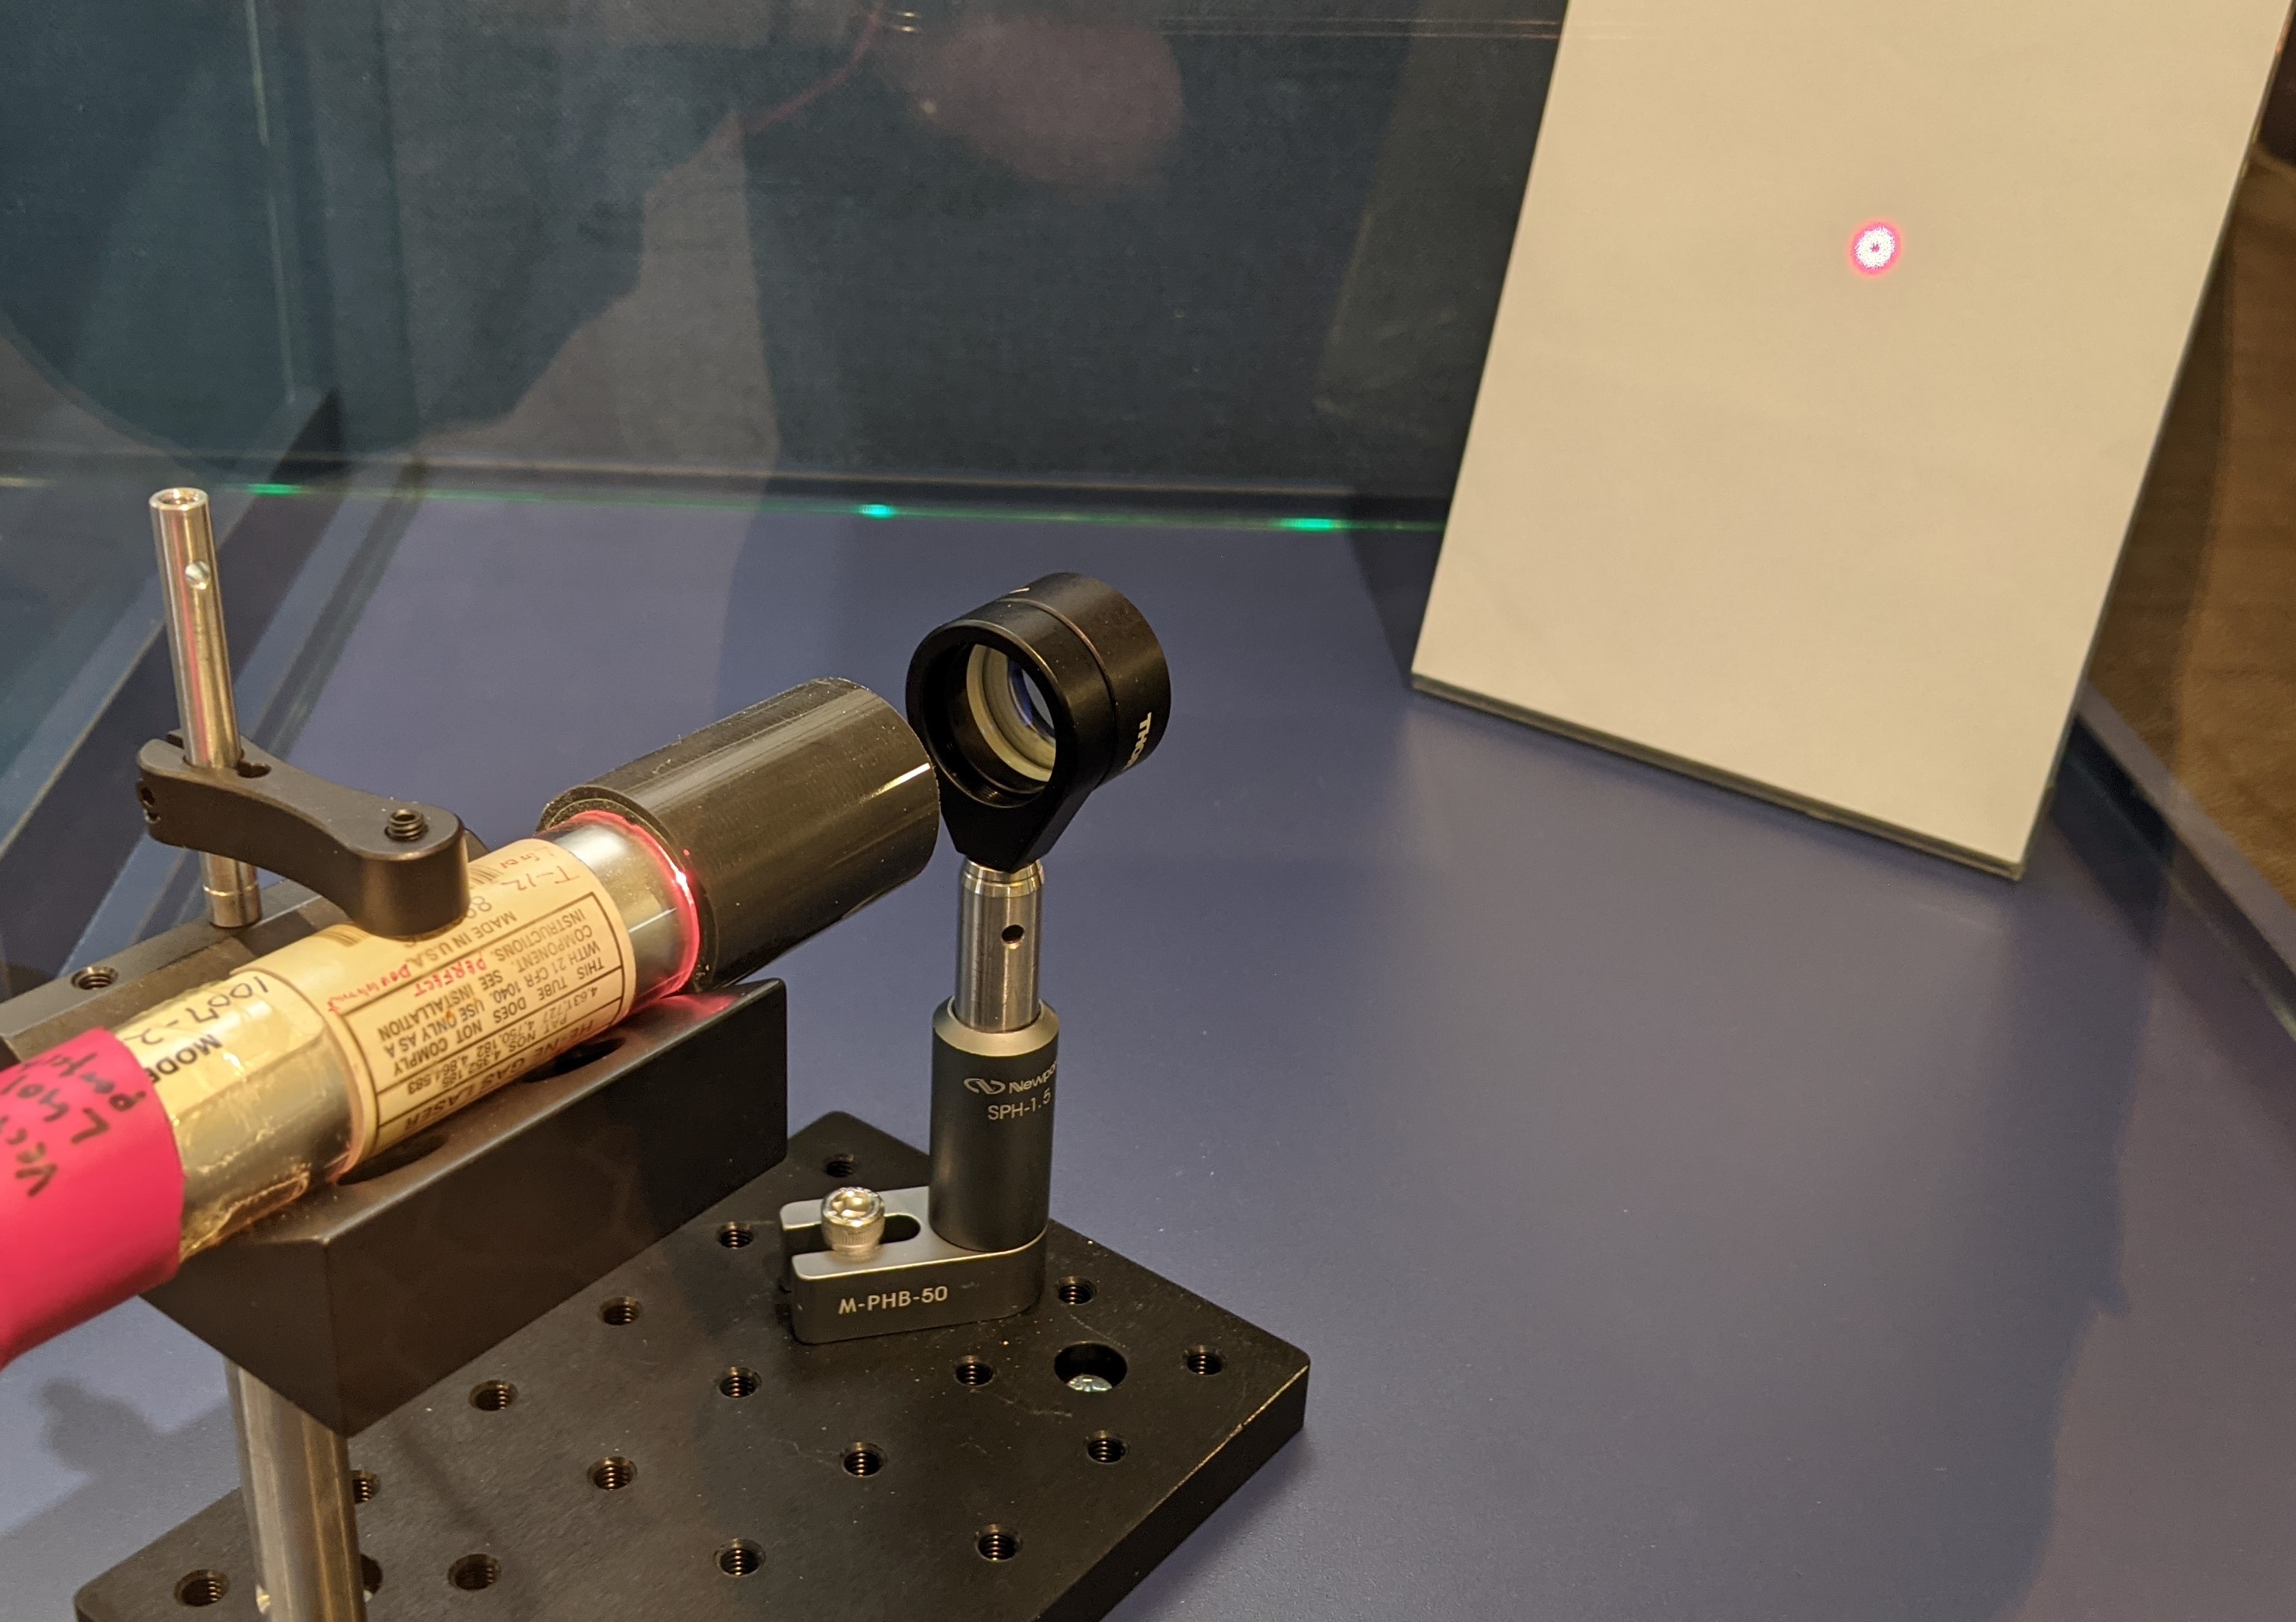 我々の研究室で開発した、世界で唯一のドーナツビームを発生させるHe-Neレーザーです。赤色のレーザー光を出すHe-Neレーザーに対して、独自の技術に基づいて改造を行いました。出力ビームは中心に穴の空いたドーナツ状の形をしていることがわかると思います。